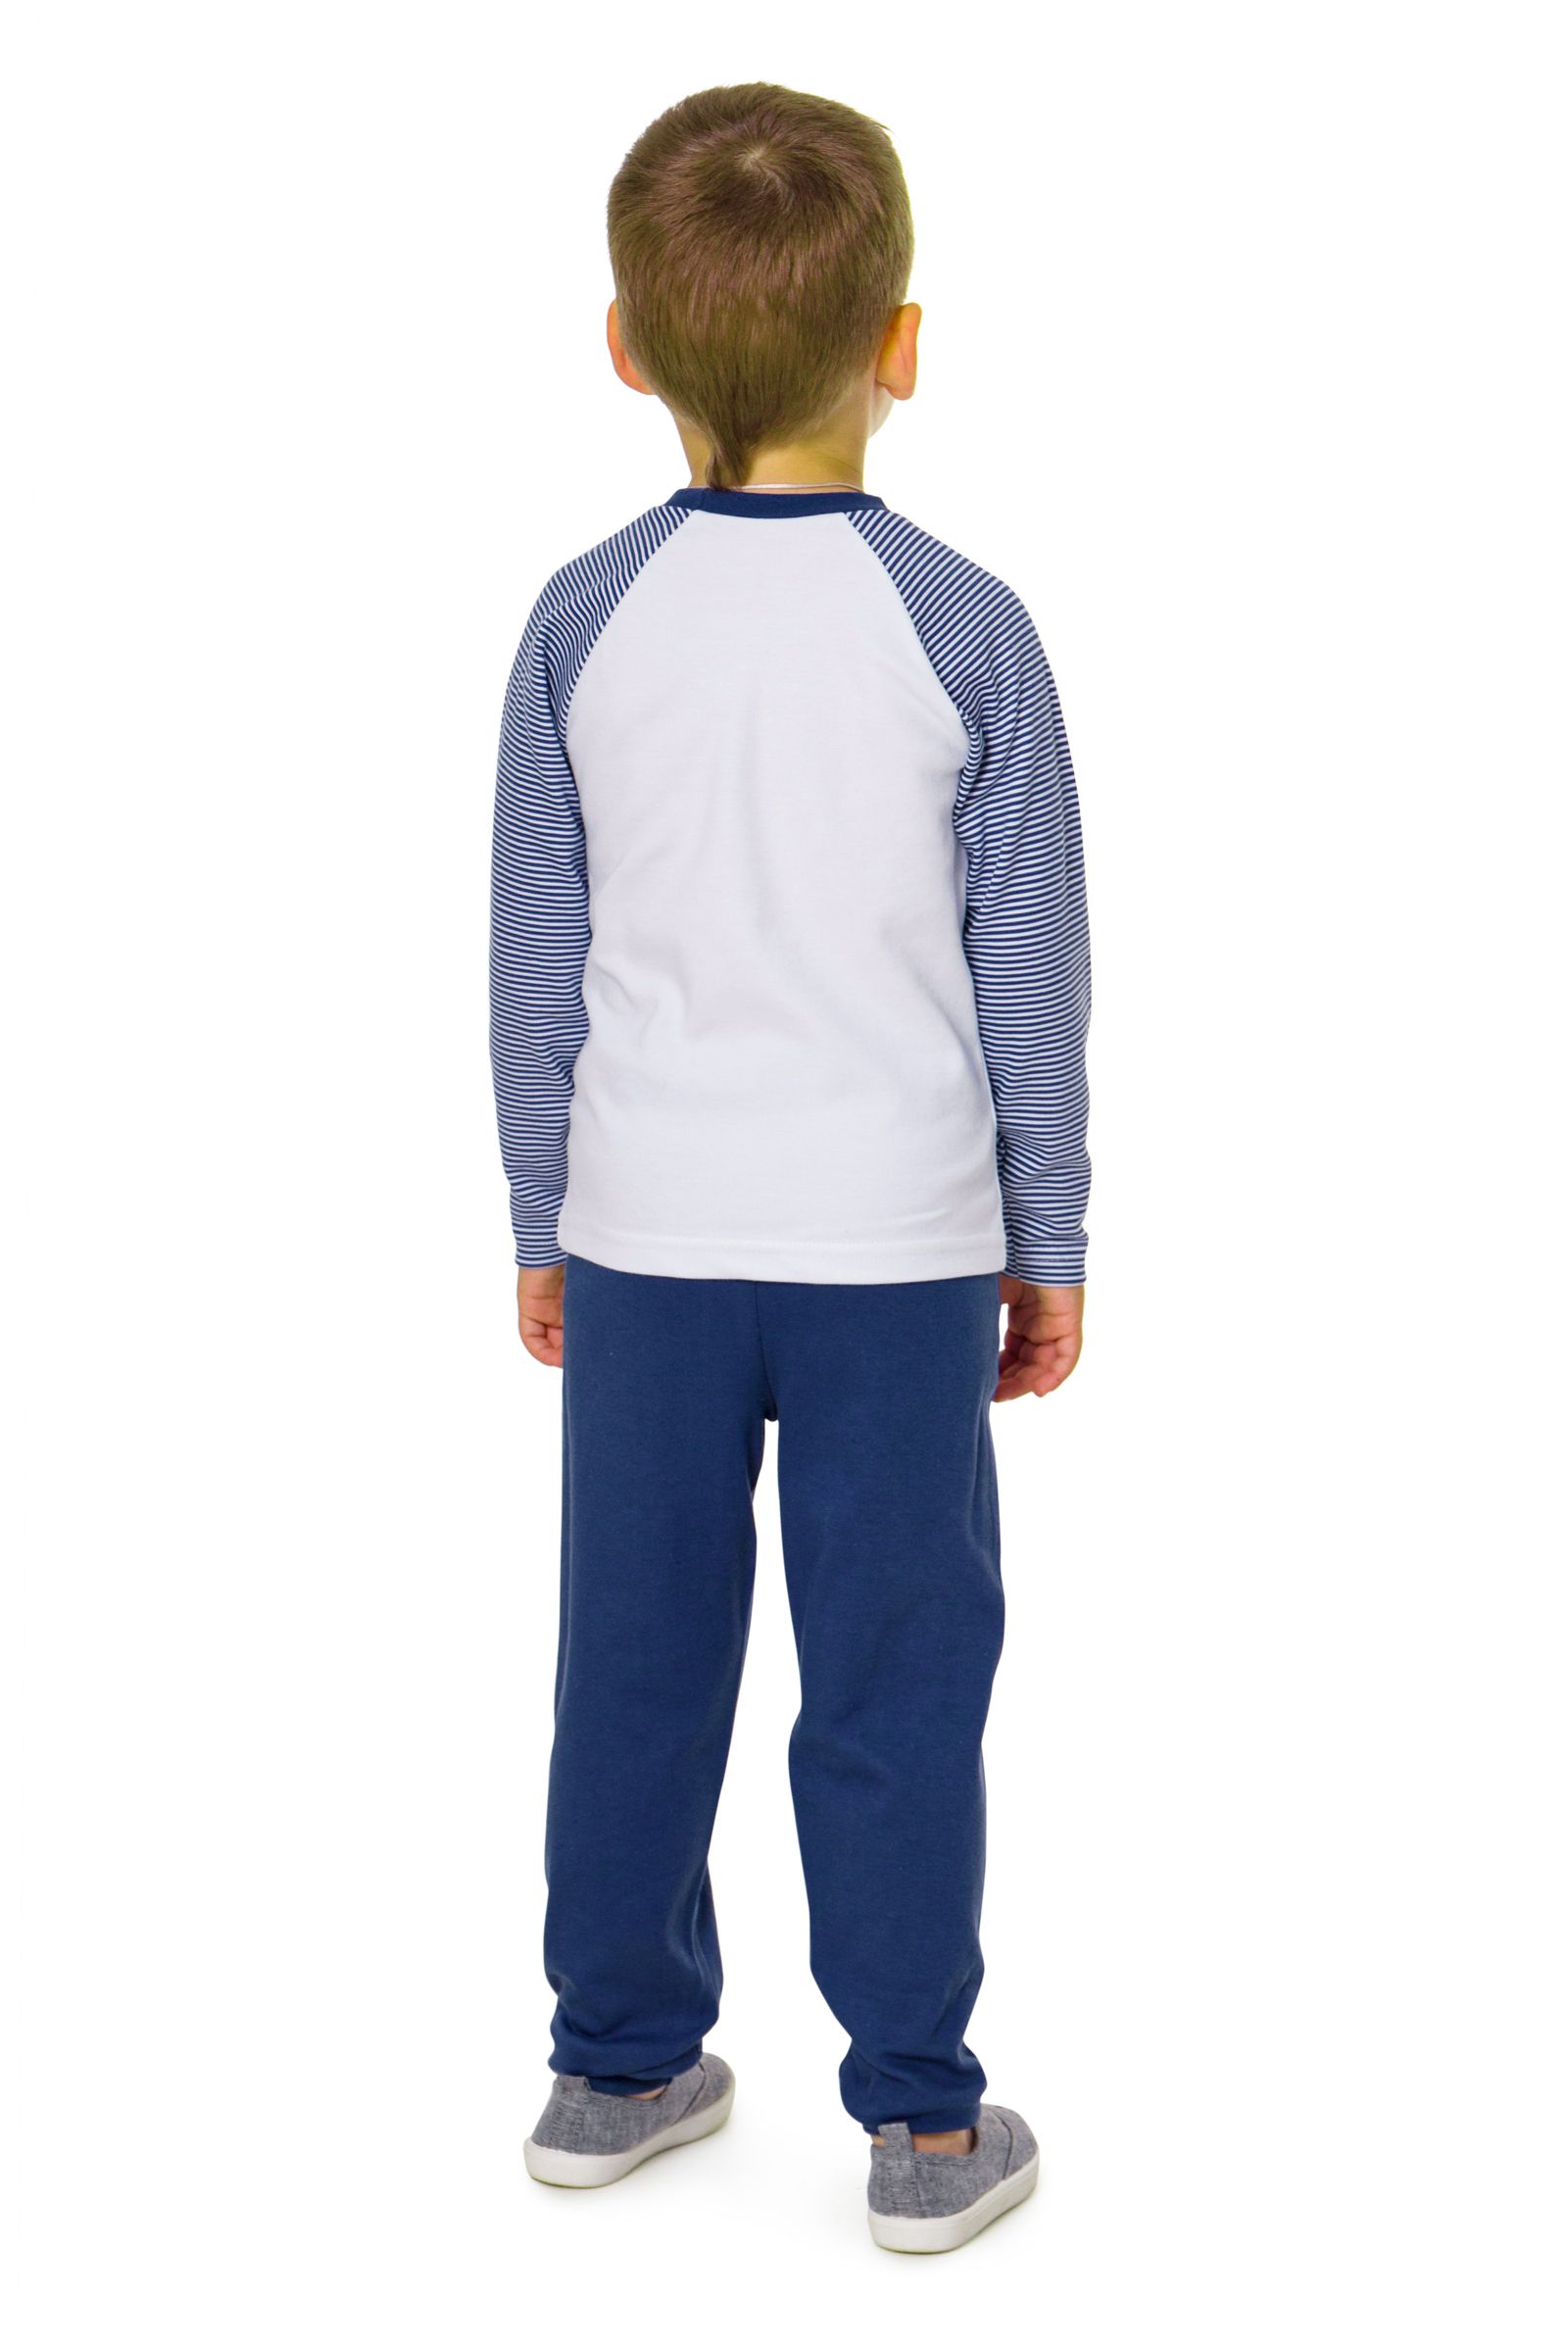 Пижама-ПЖ01-2887 оптом от производителя детской одежды 'Алёна'